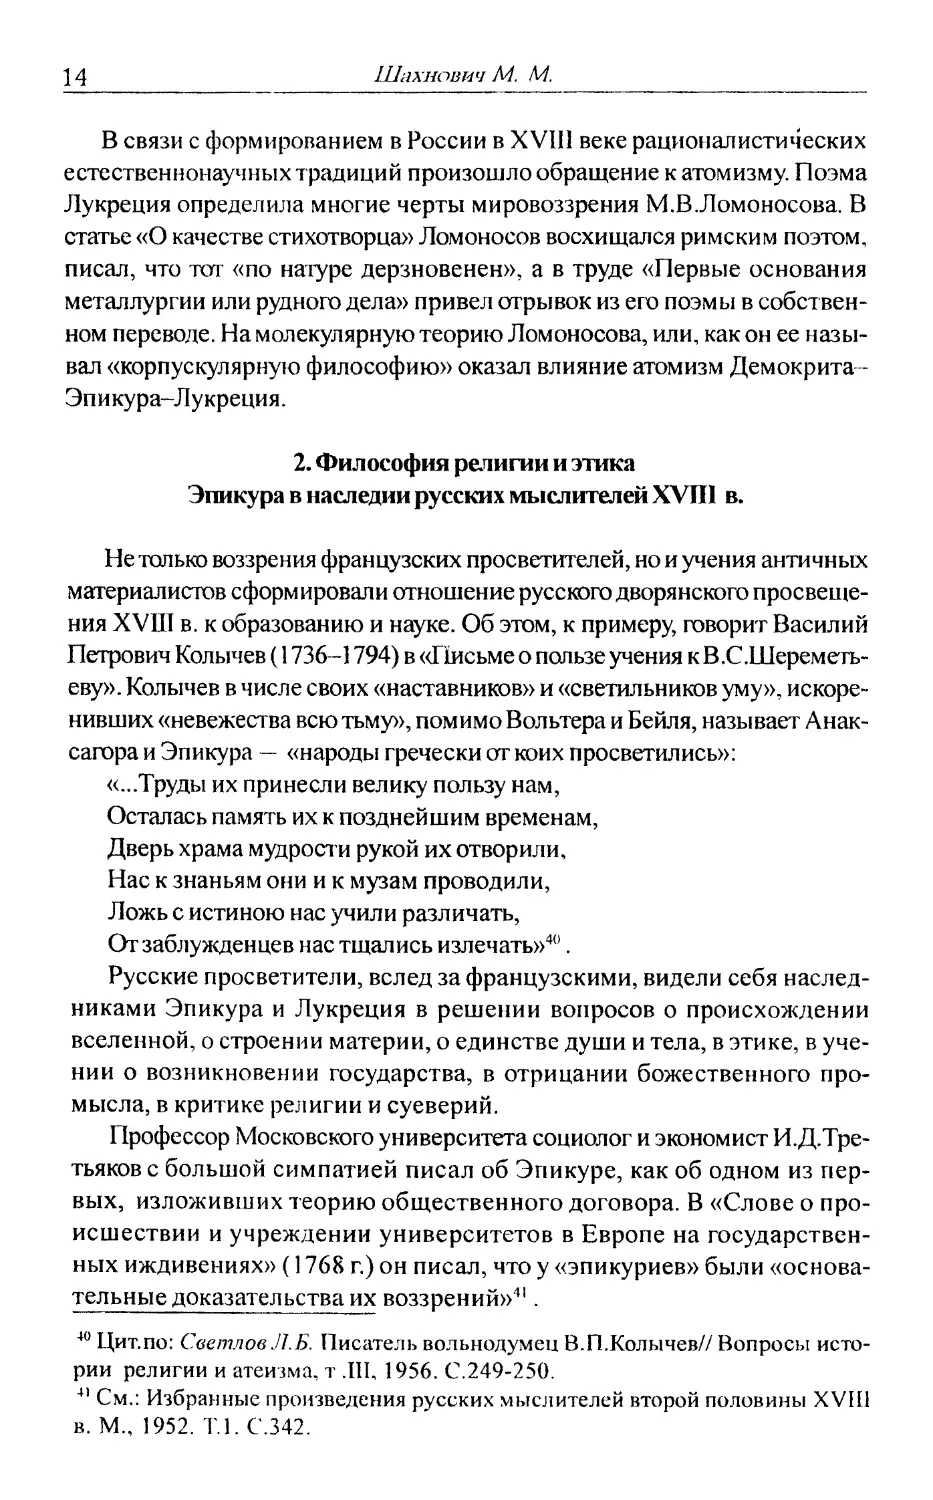 2. Философия религии и этика Эпикура в наследии русских мыслителей XVIII в.